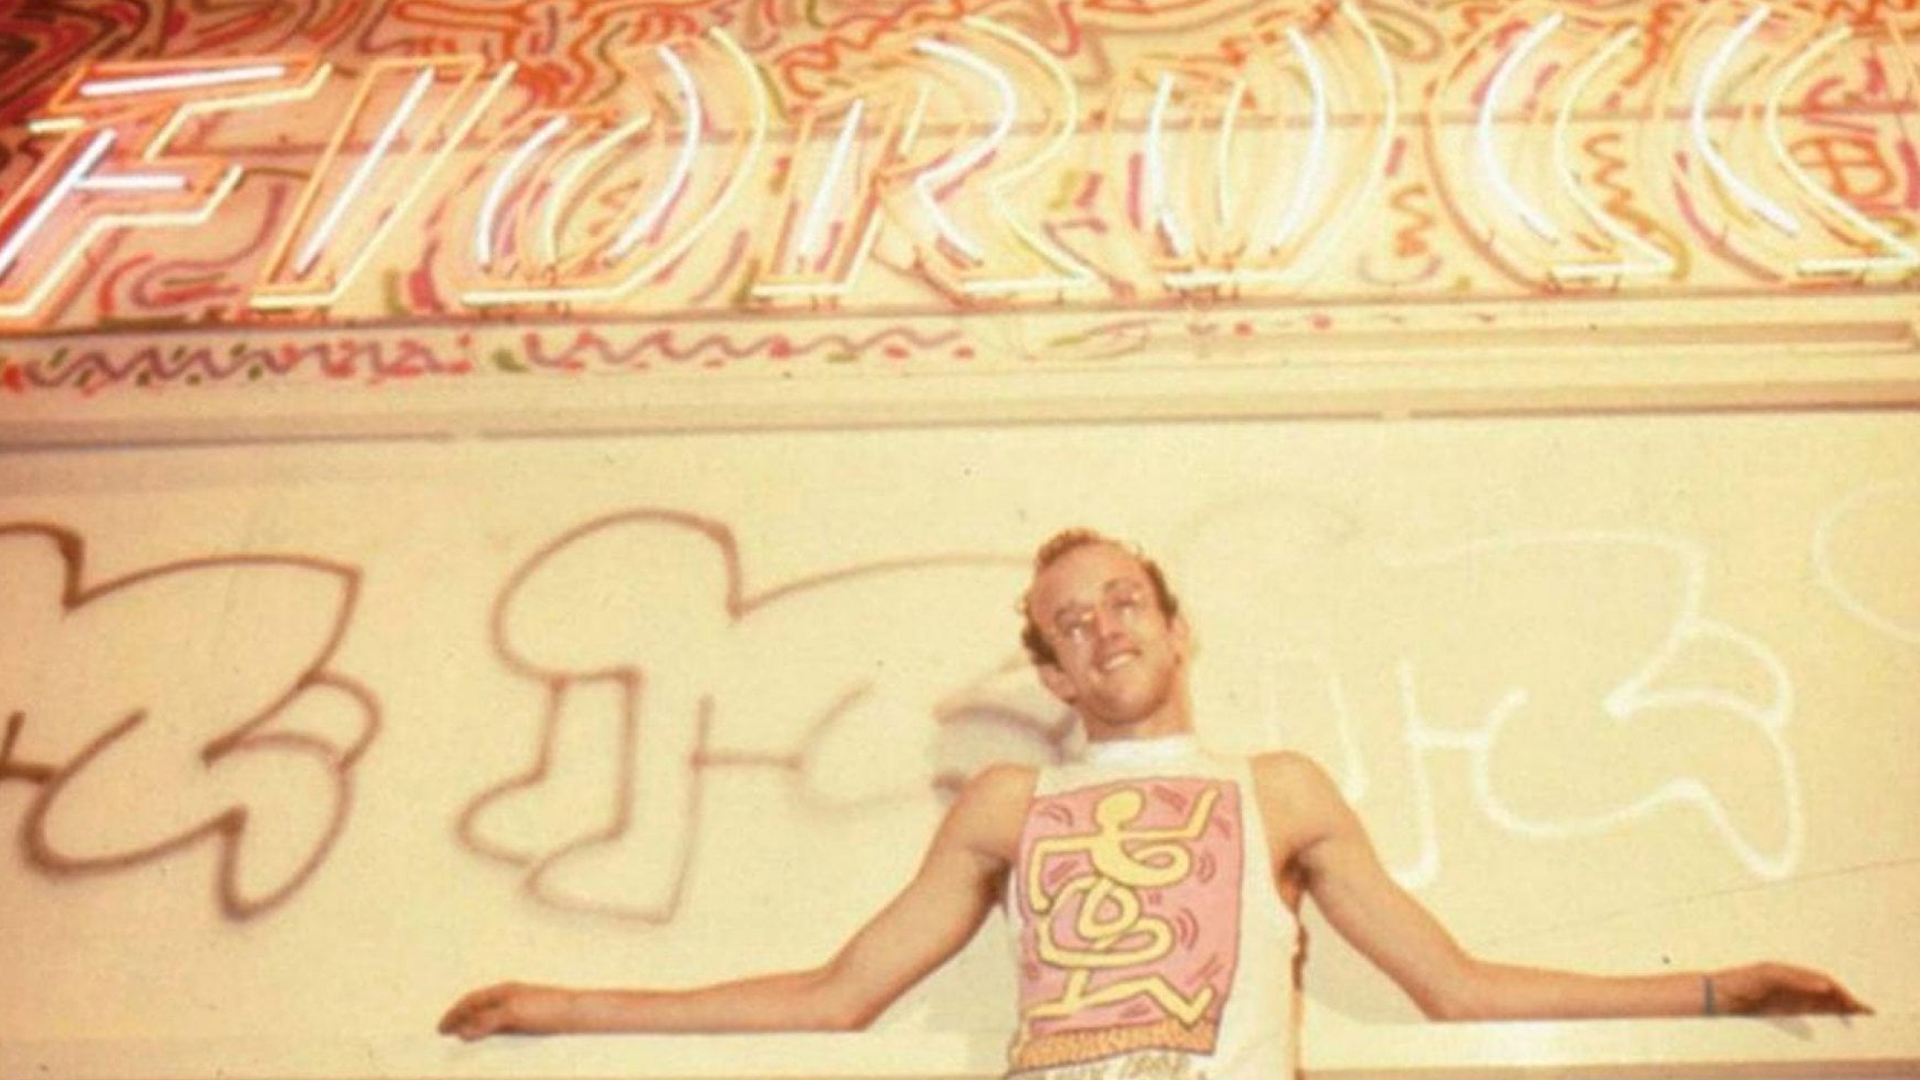 Immagine principale di: La lost art, Keith Haring e il mistero del murale scomparso (a Milano)